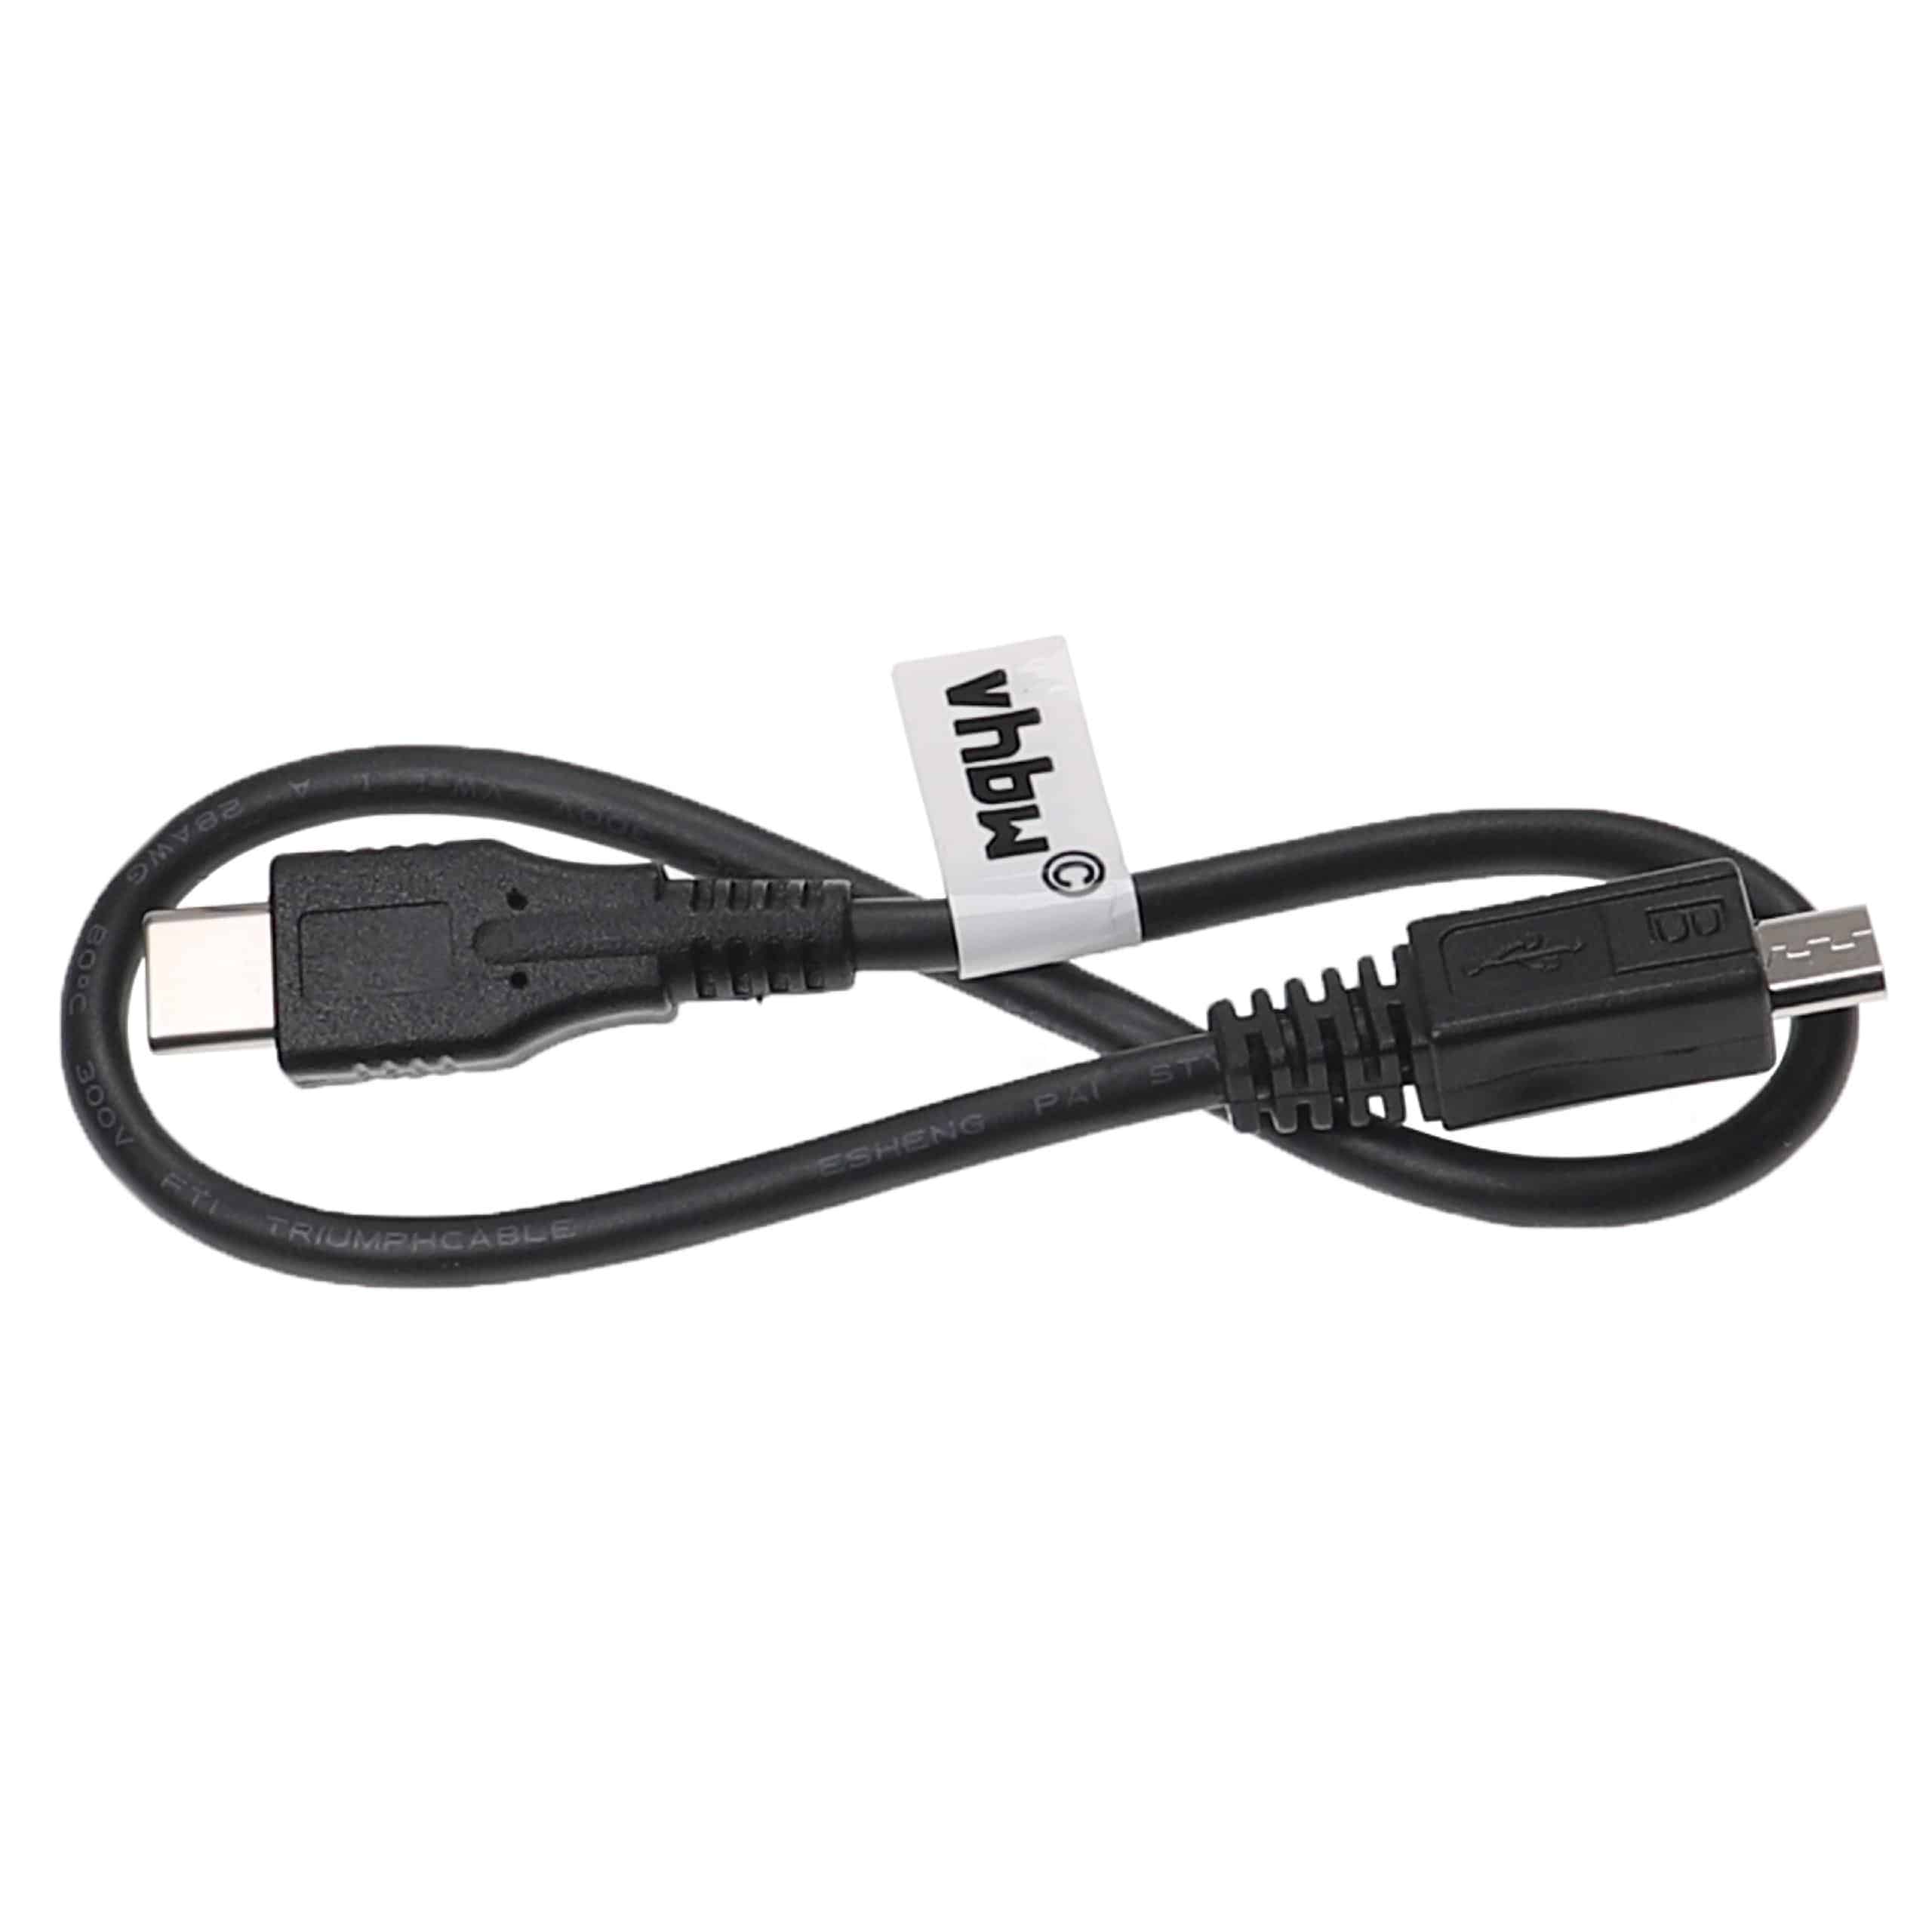 Micro-USB Kabel (USB 3.1 Typ C auf Micro-USB) passend für diverse Geräte